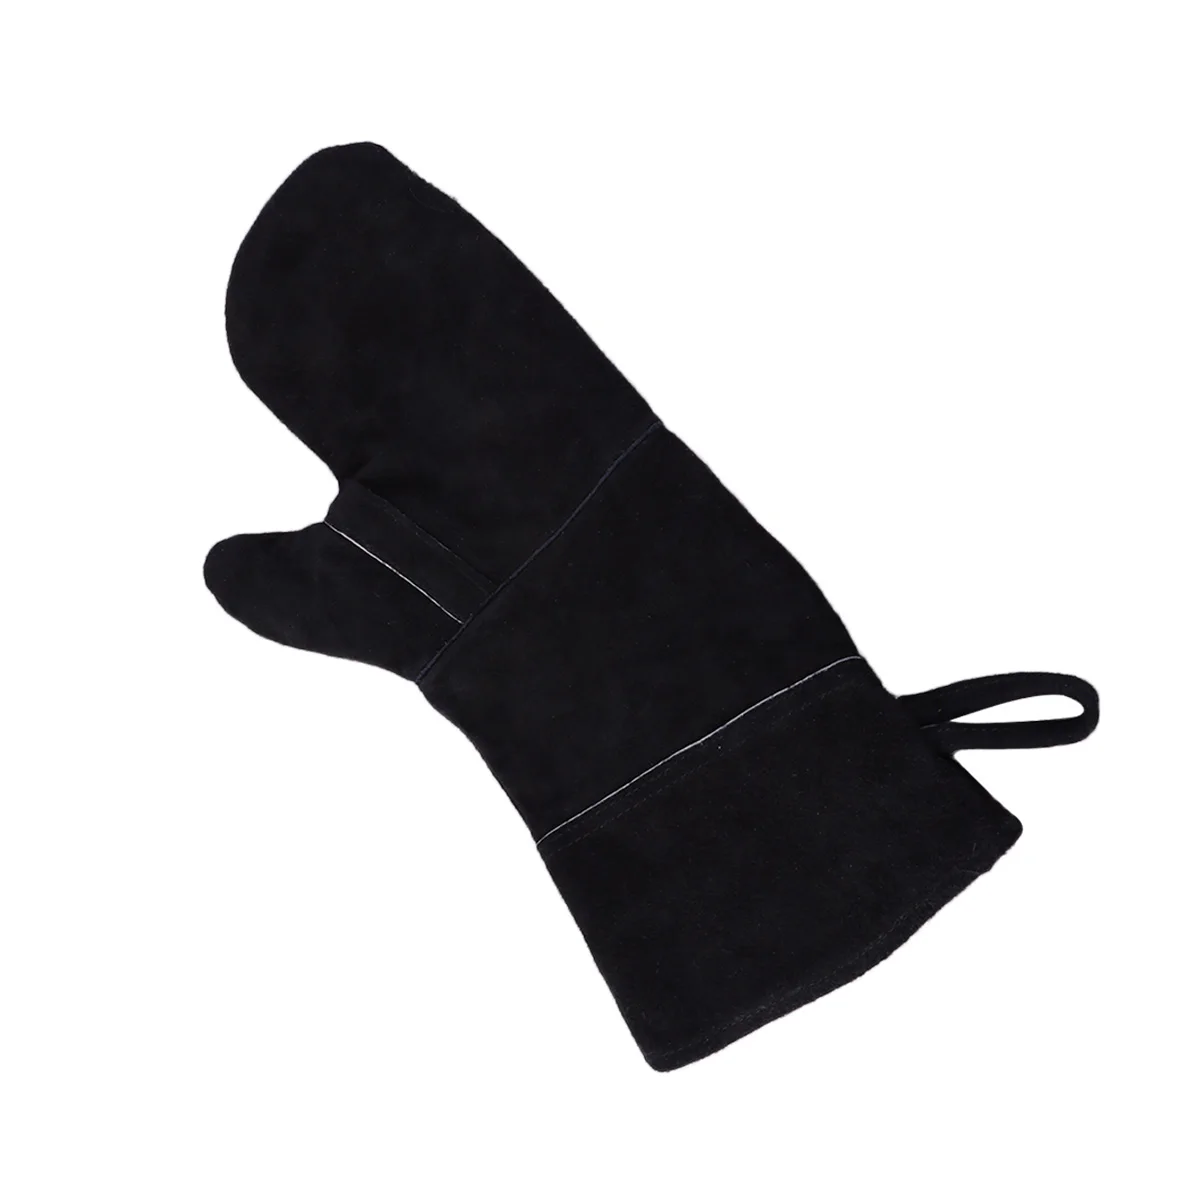 1 шт. Изолированная с длинным рукавом кожаная термостойкая перчатка для печи печь Сварка барбекю камин гриль